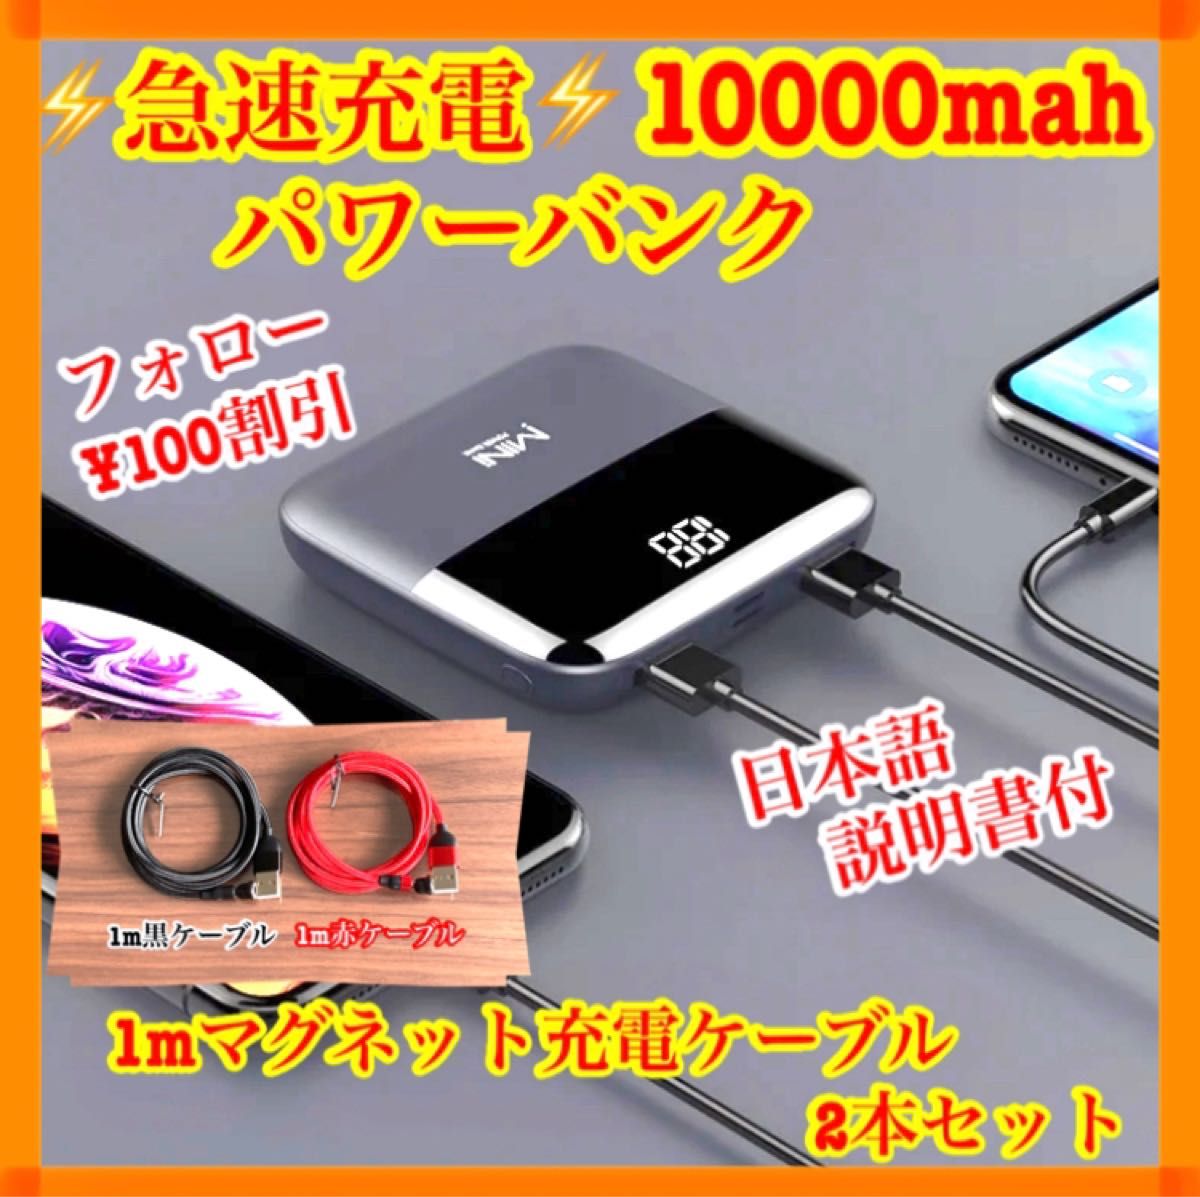 【不安解消】 橙画 マグネットケーブル2本セット 急速充電 モバイルバッテリー